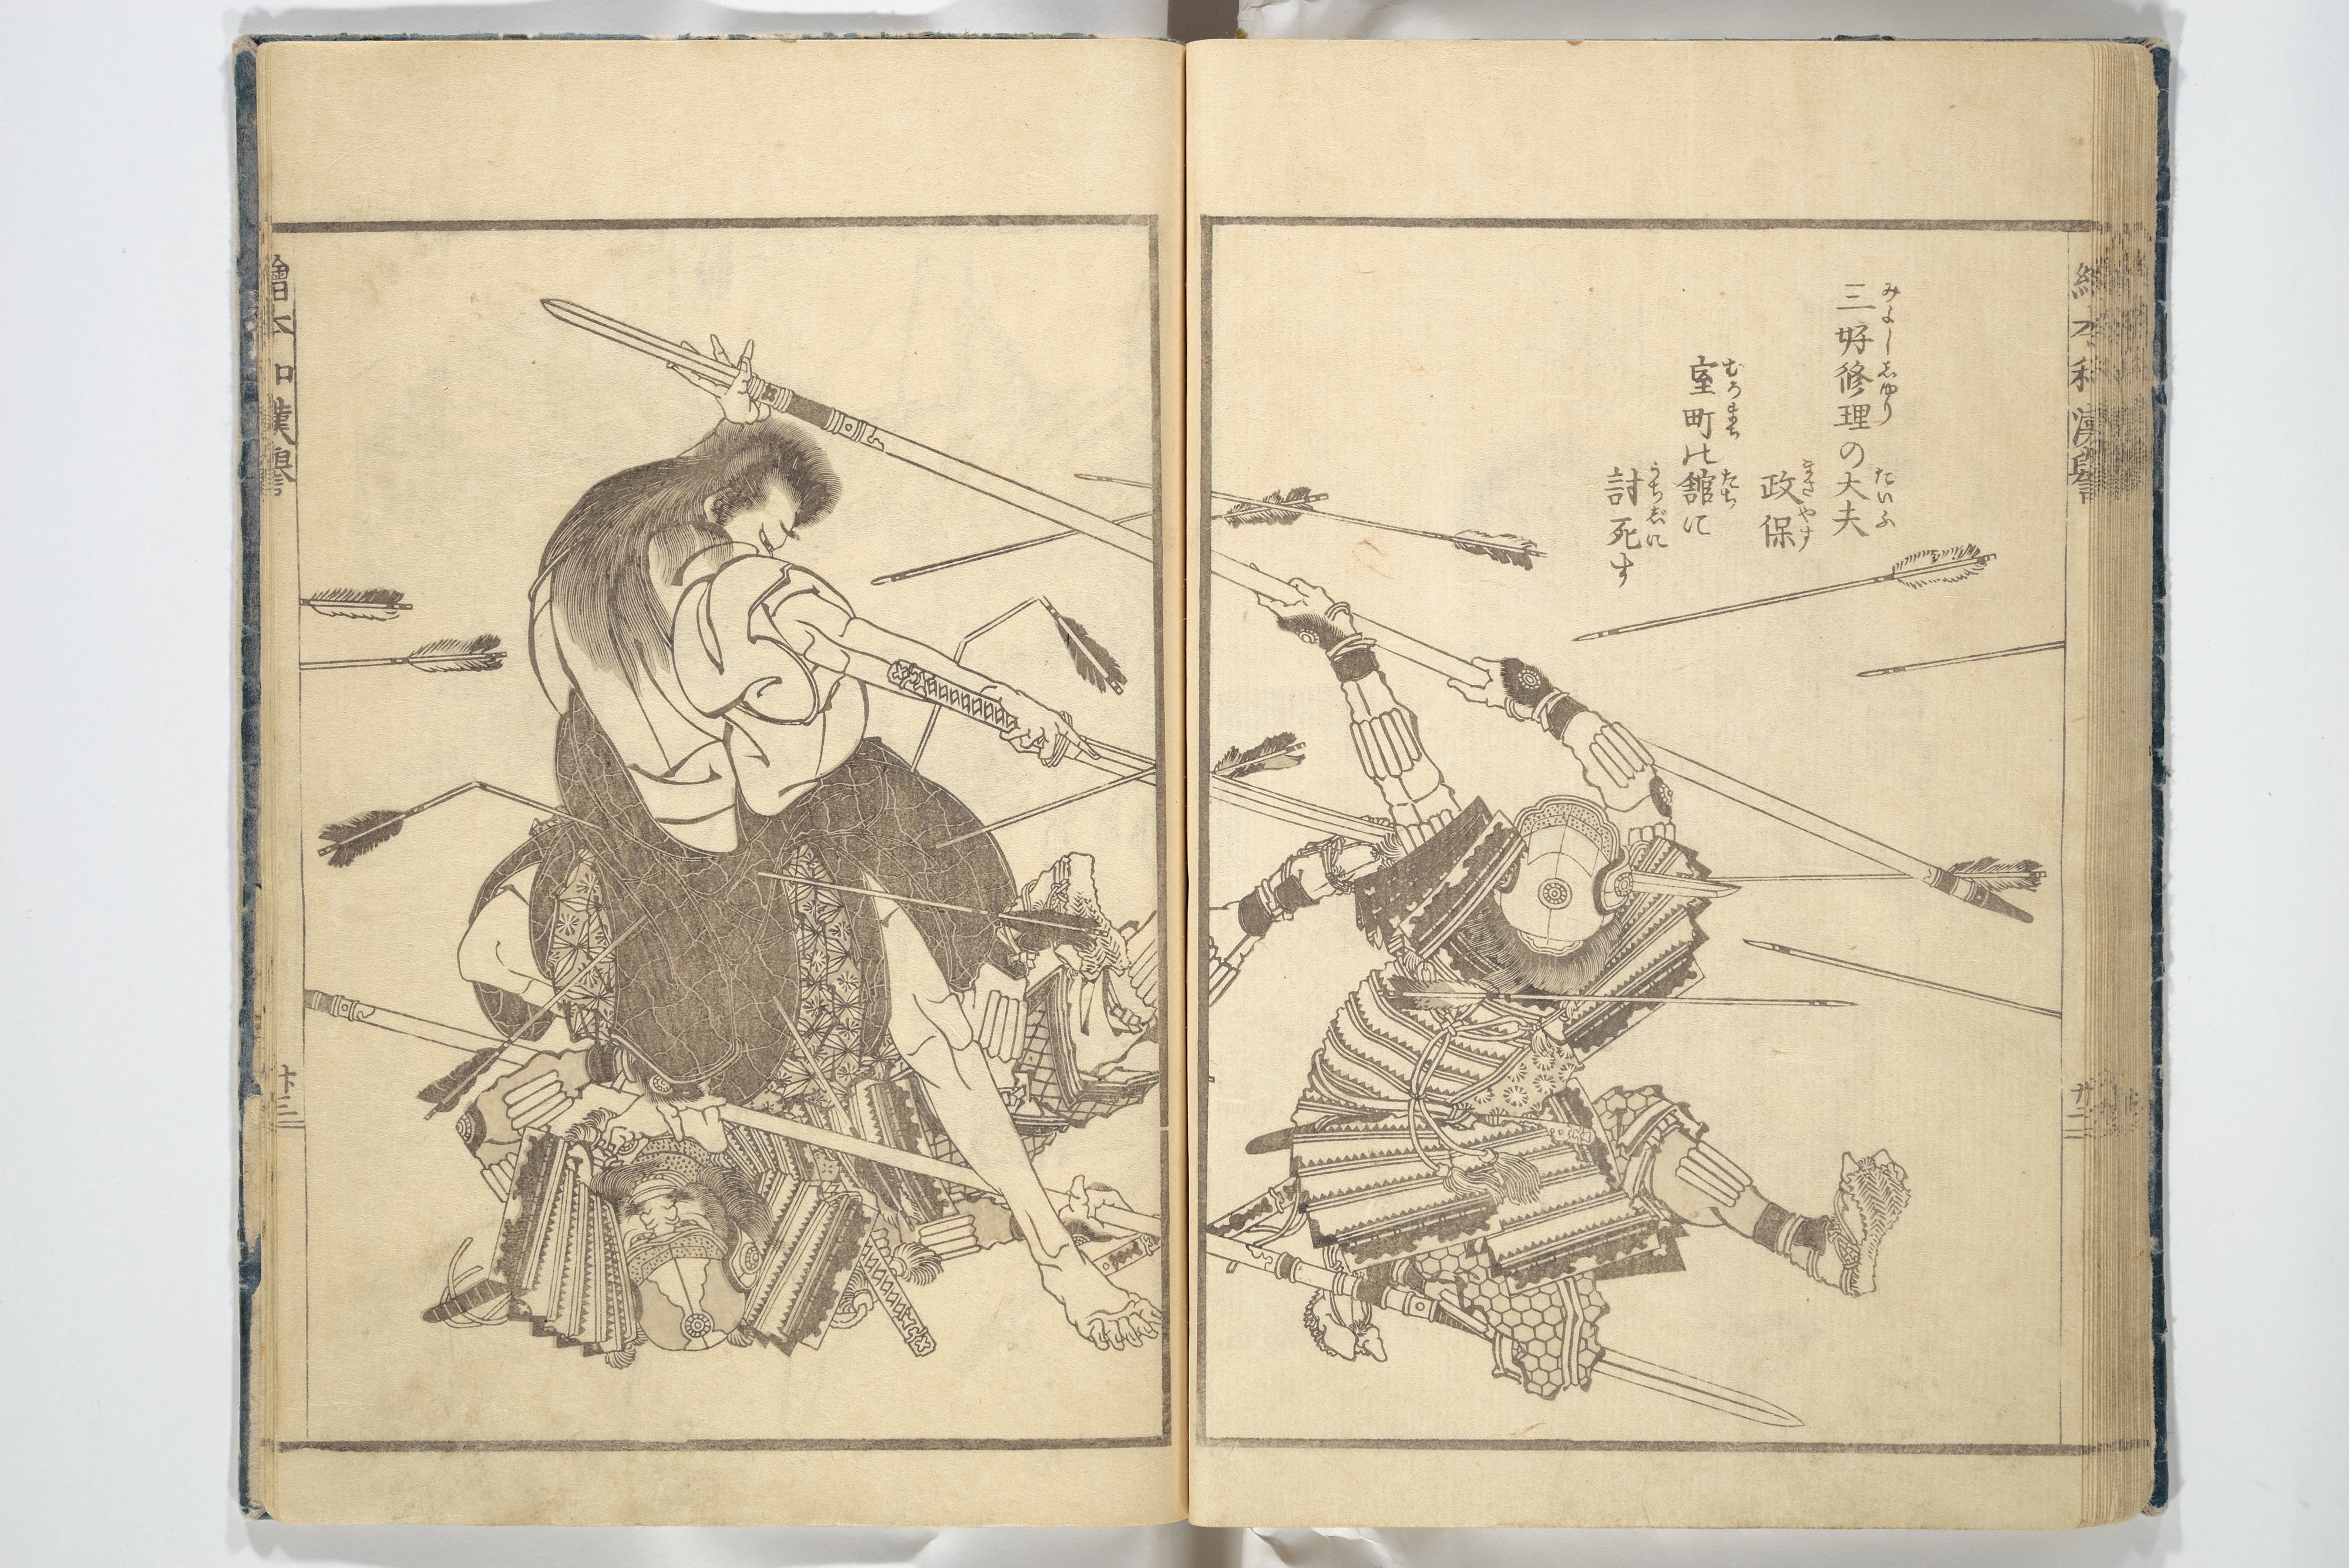 Katsushika Hokusai 葛飾北斎 | Picture Book on Heroes of China and 